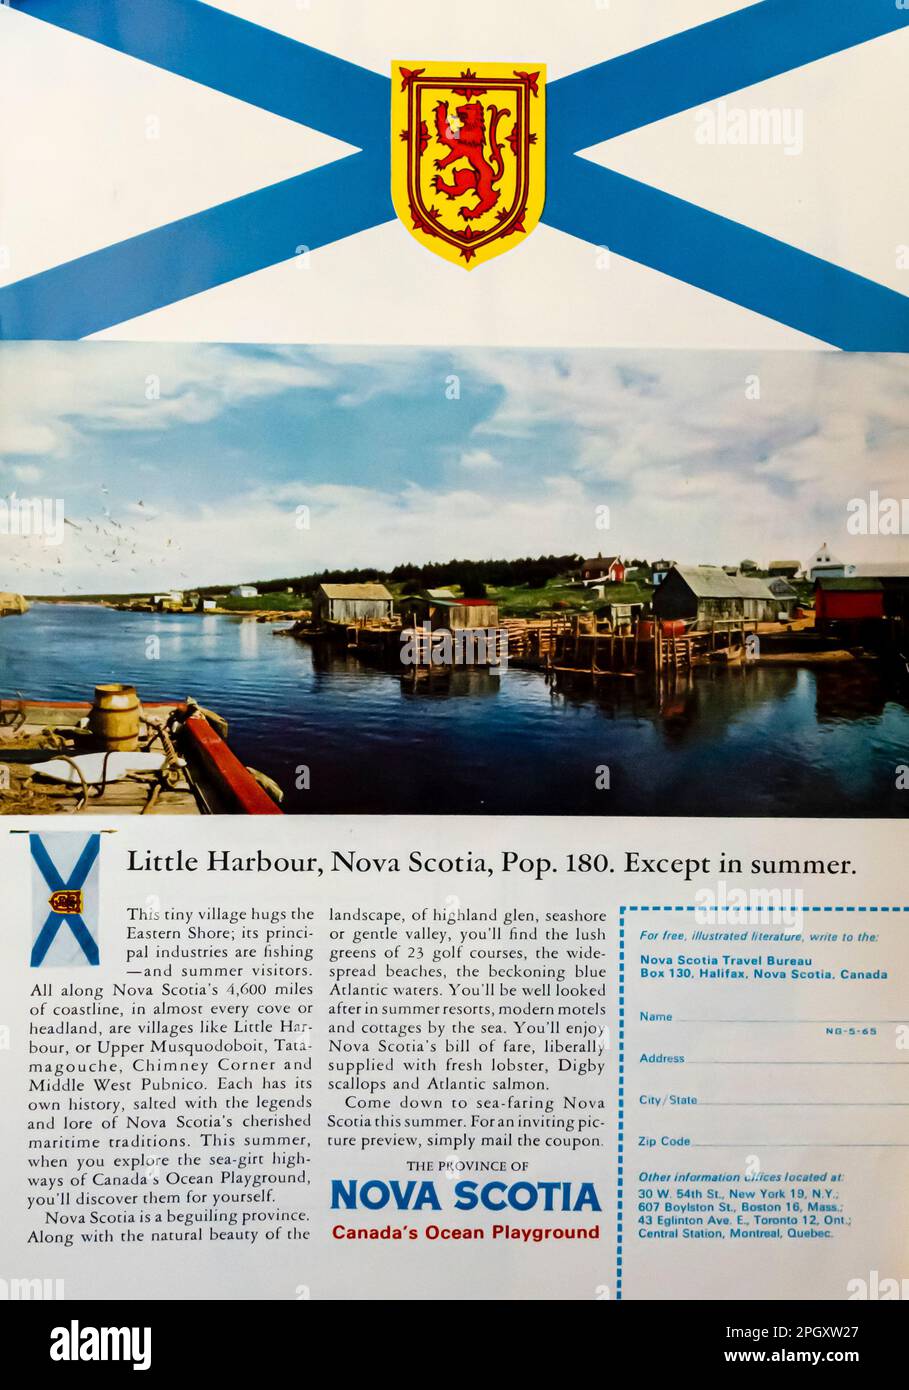 Nova Scotia Canada Travel Advert in a NatGeo magazine, maggio 1965 Foto Stock